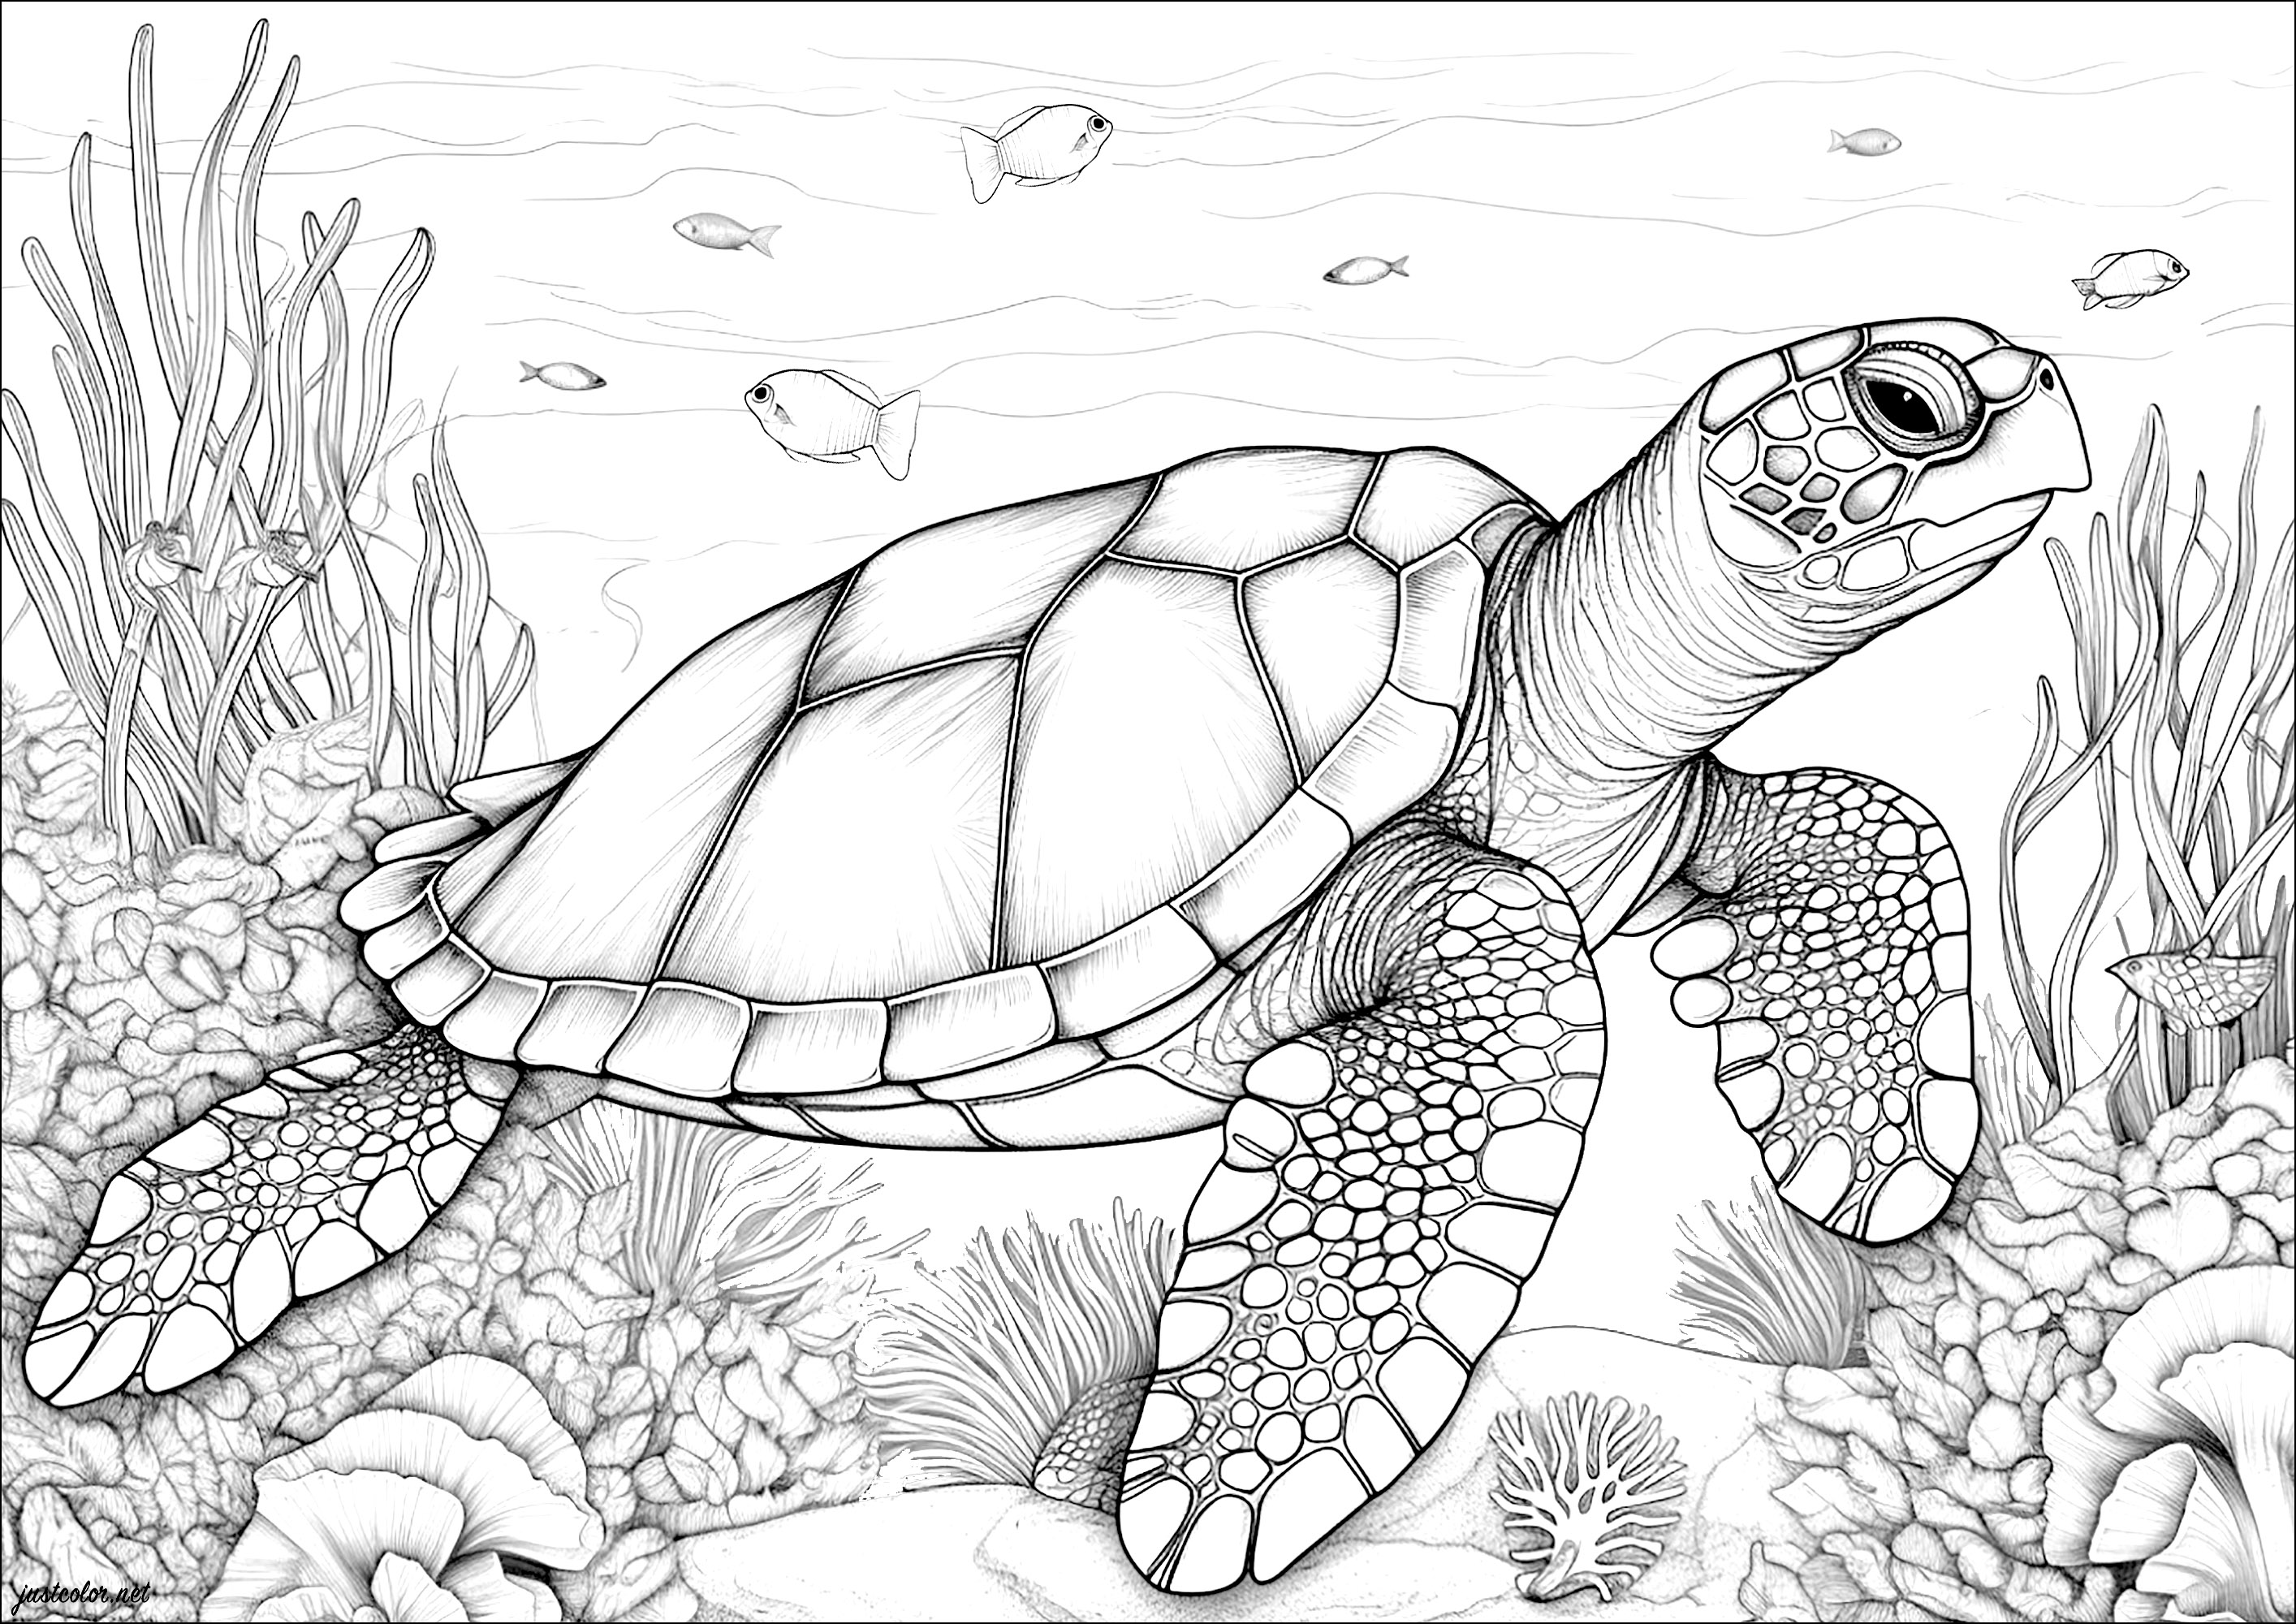 Tartarugas marinhas, peixes e corais. Muitos pormenores para colorir nesta bela decoração aquática